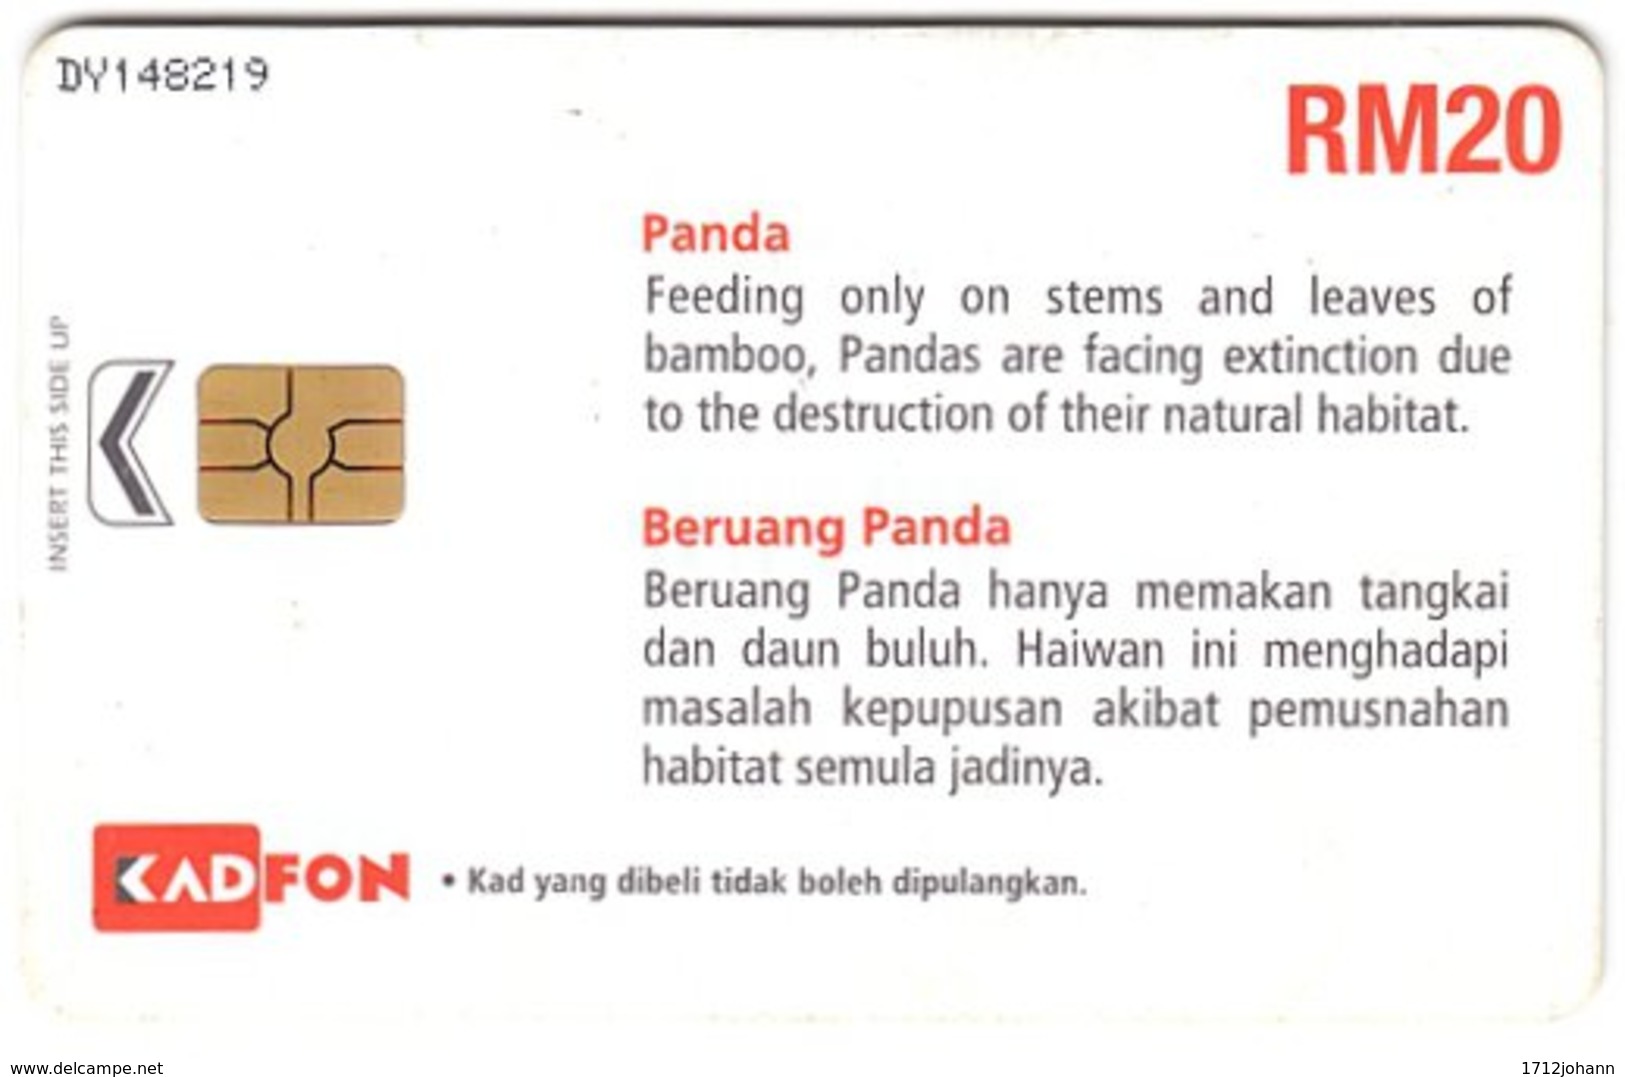 MALAYSIA A-996 Chip Kadfon - Toy, Panda - Used - Malasia